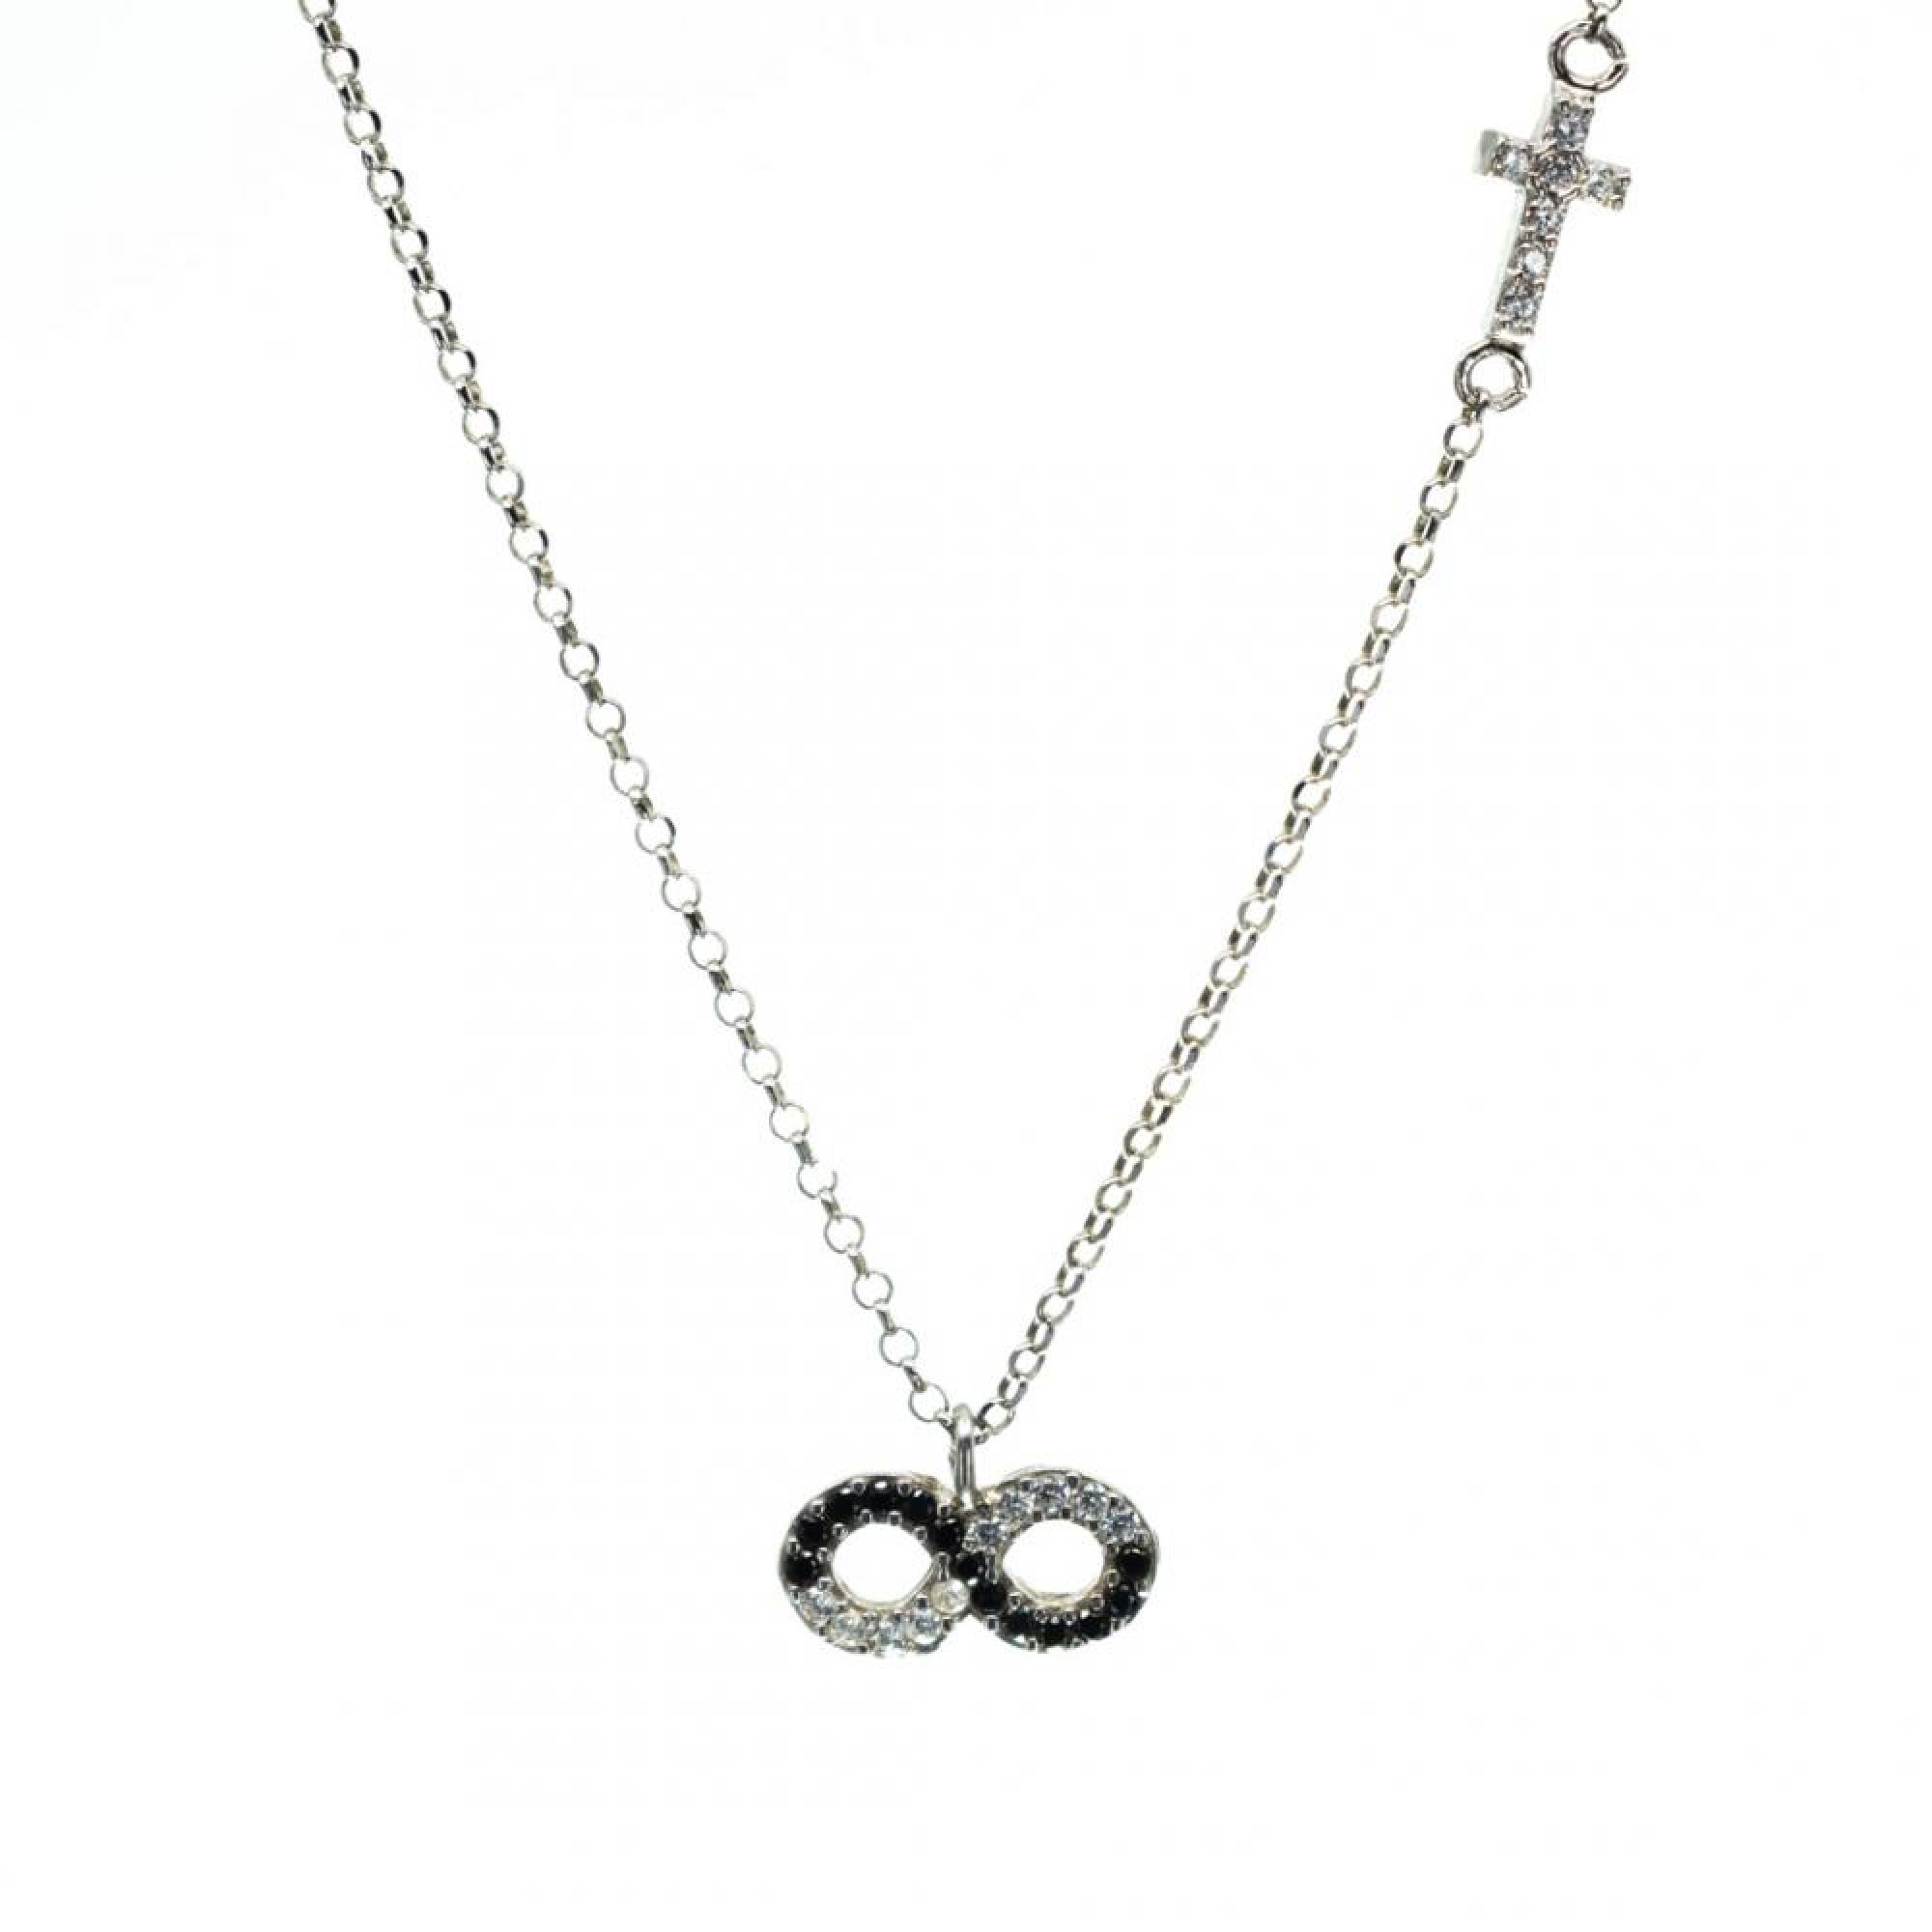 Infinity necklace with zircon stones